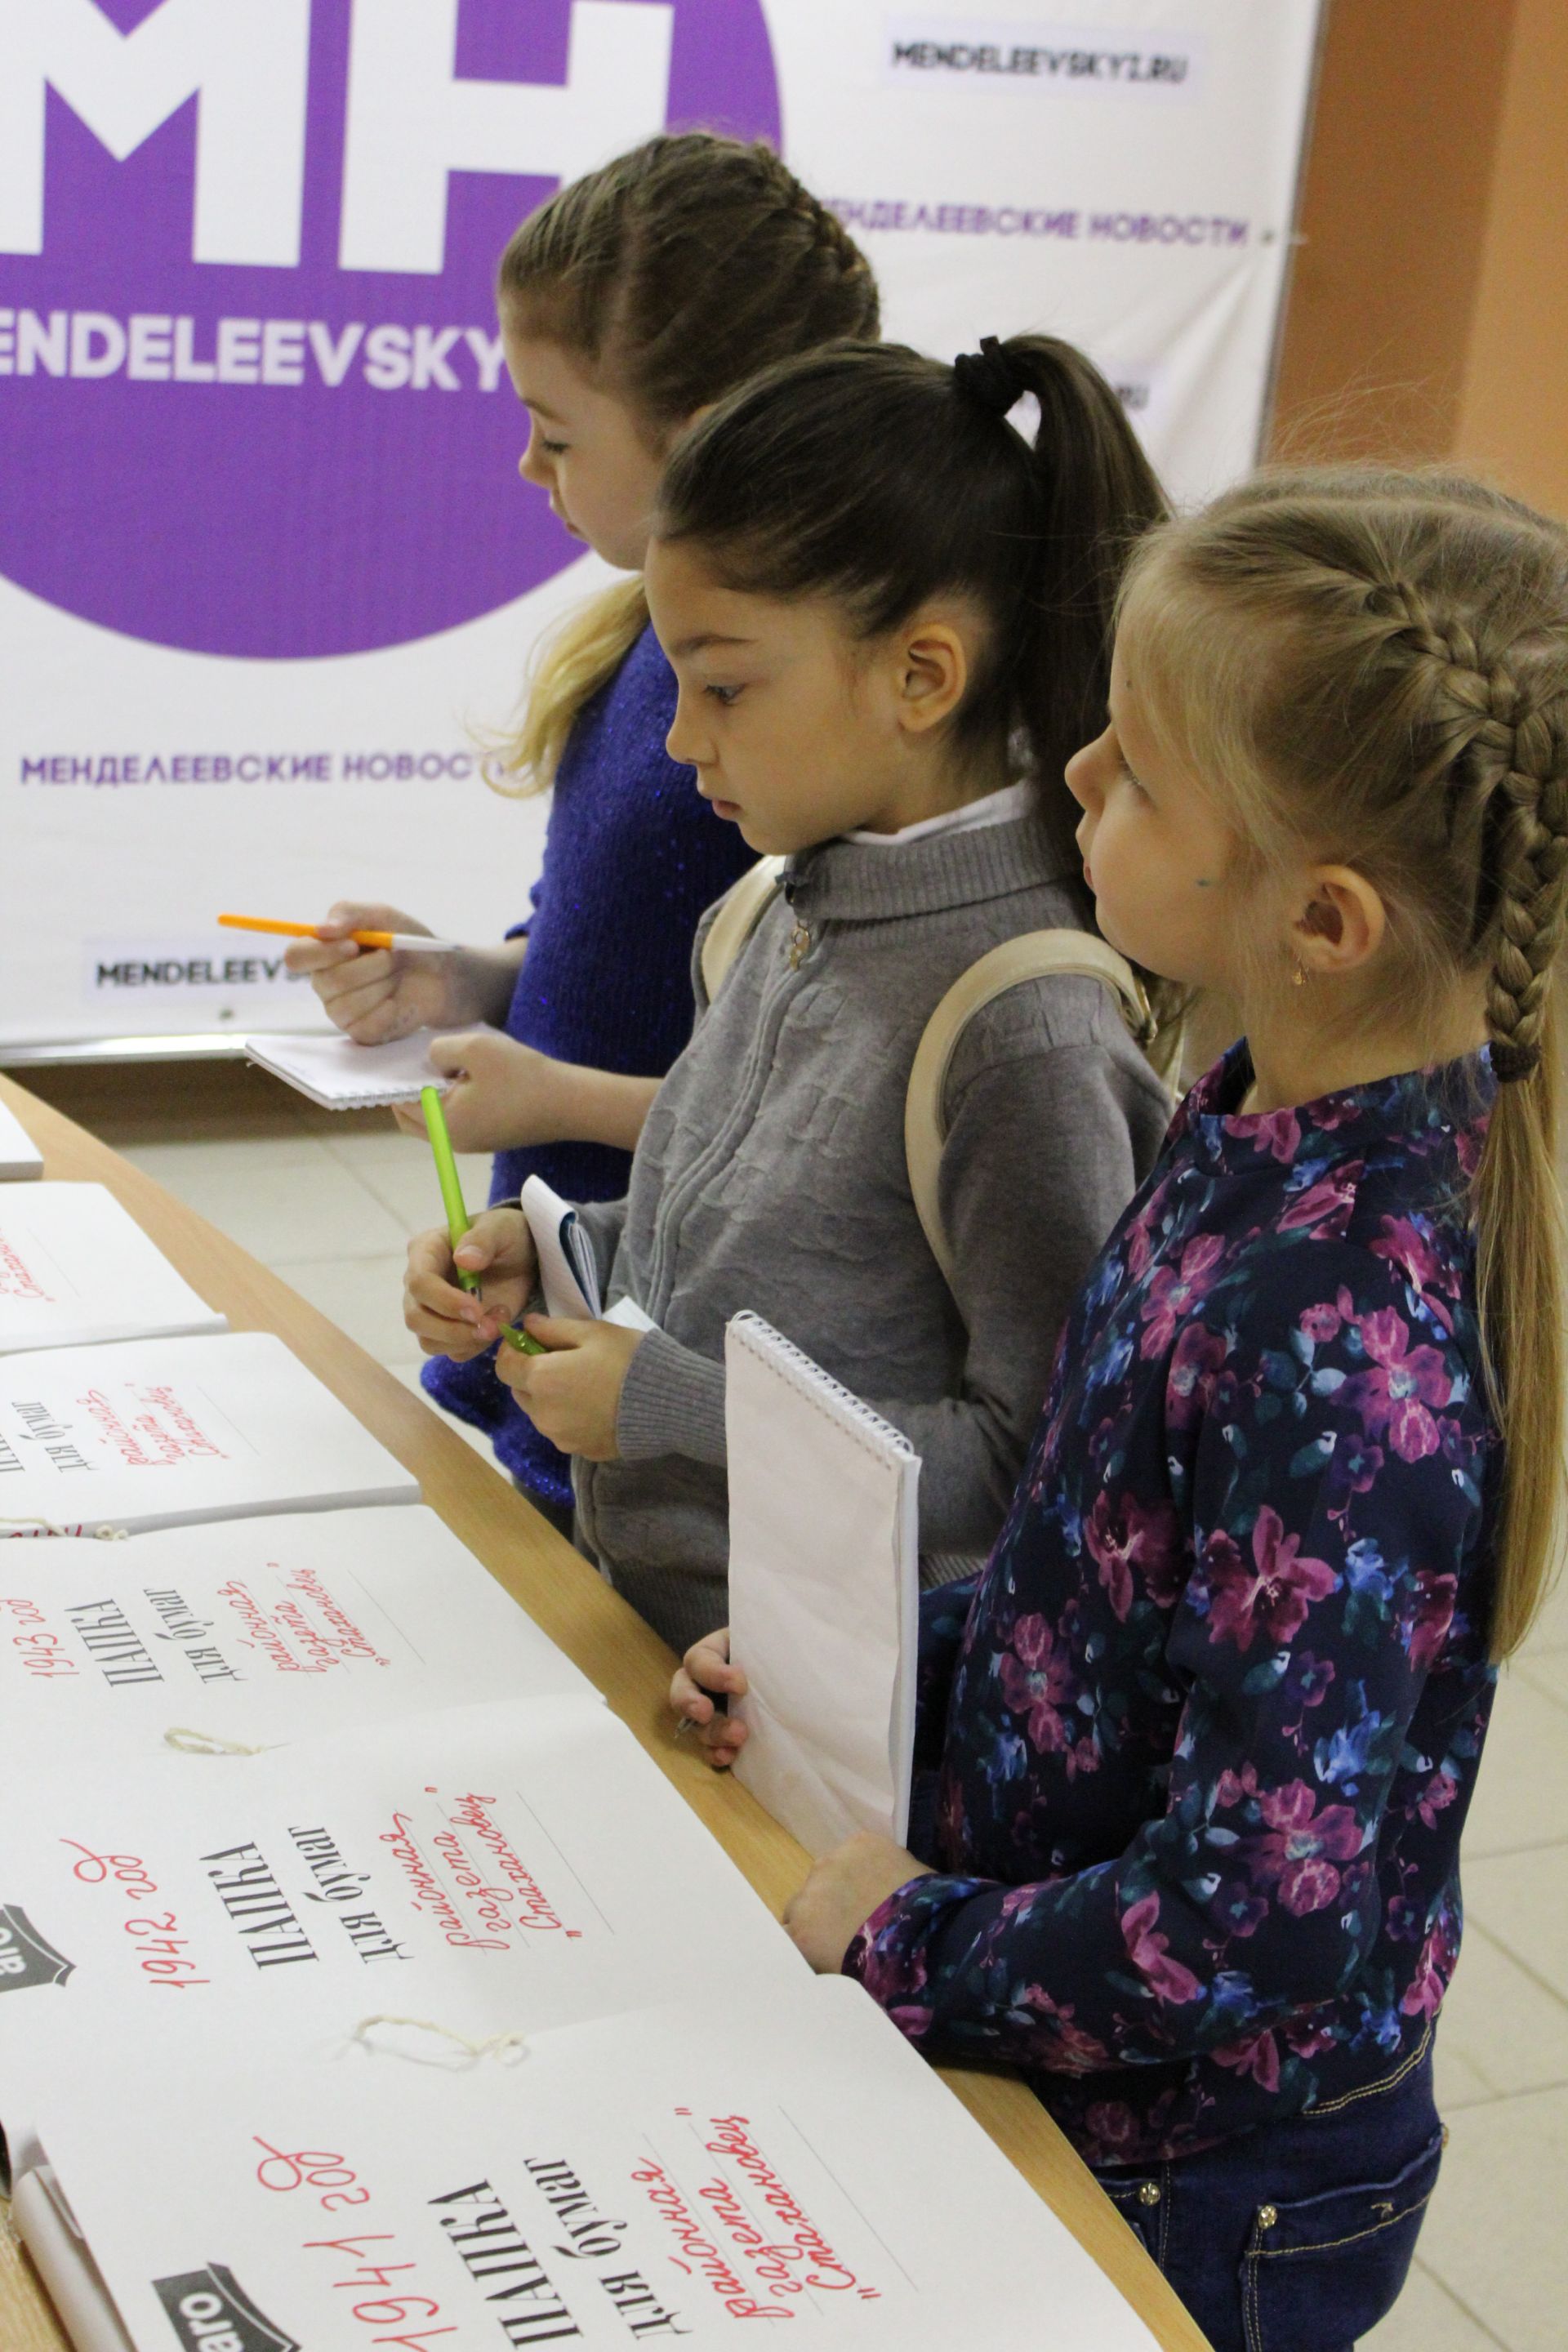 Ученики гимназии готовят проект про «Менделеевские новости»